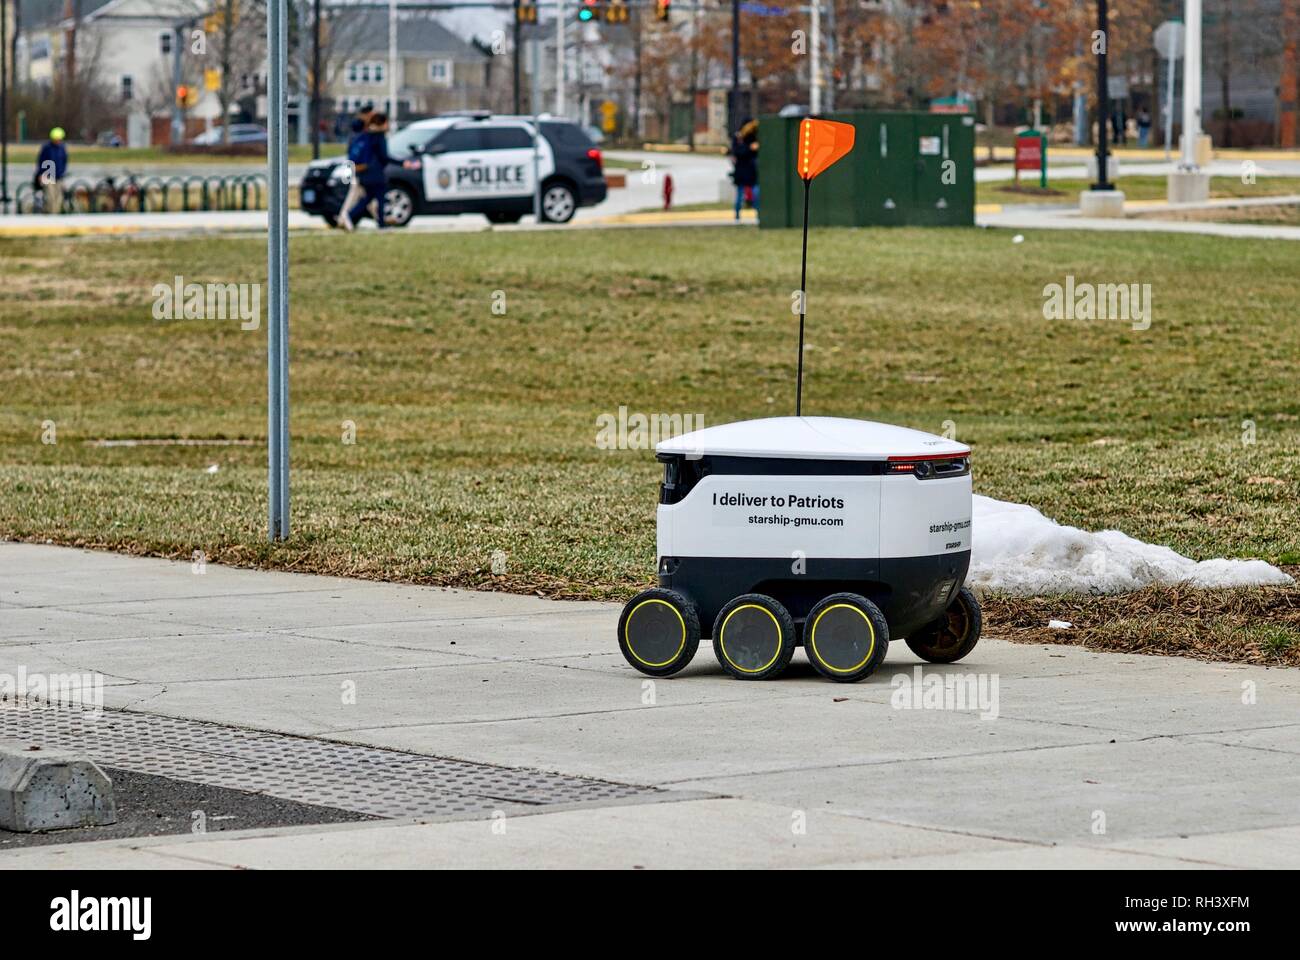 Fairfax, Virginia, USA - Januar 29, 2019: Ein autonomes Lebensmittel-lieferservice Roboter fährt auf dem Weg zu einem Kunden auf dem Campus der George Mason University. Stockfoto